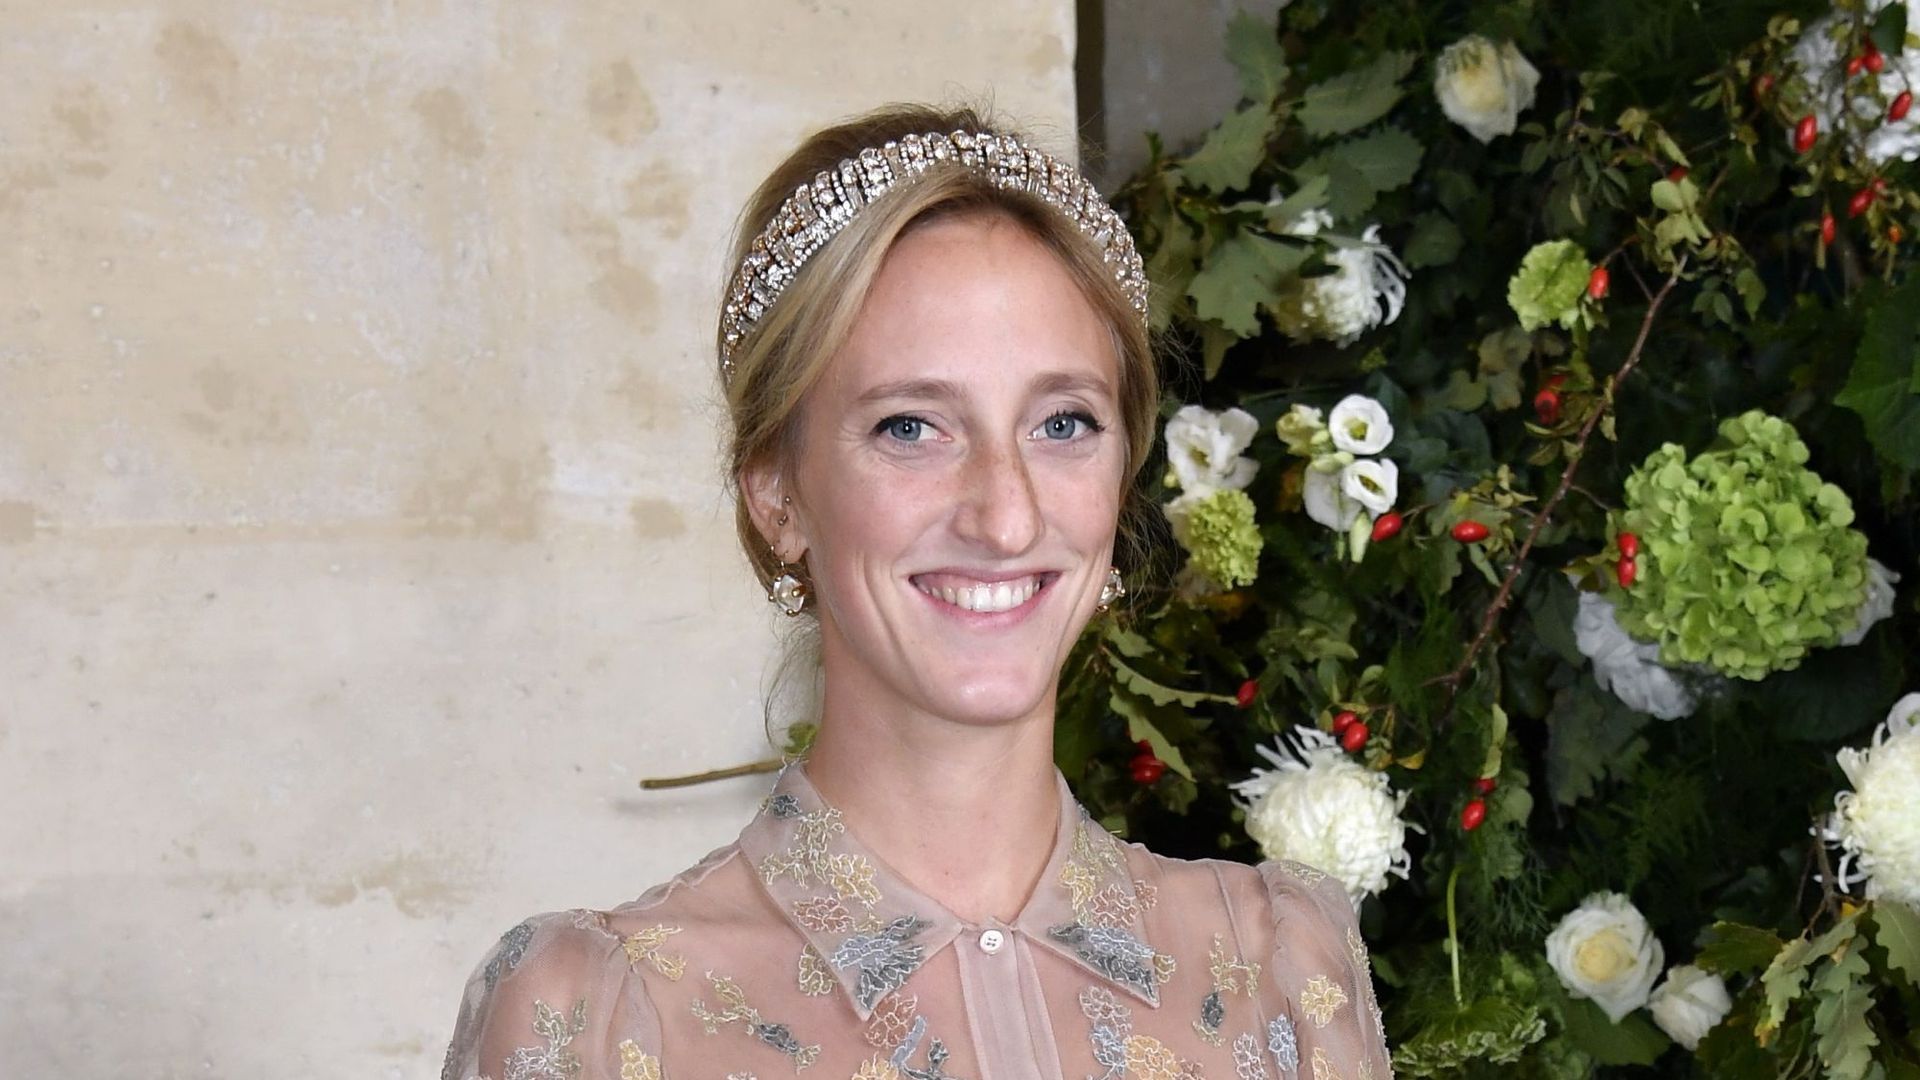 La principessa belga Maria Laura sposerà William Esvi il 10 settembre a Bruxelles